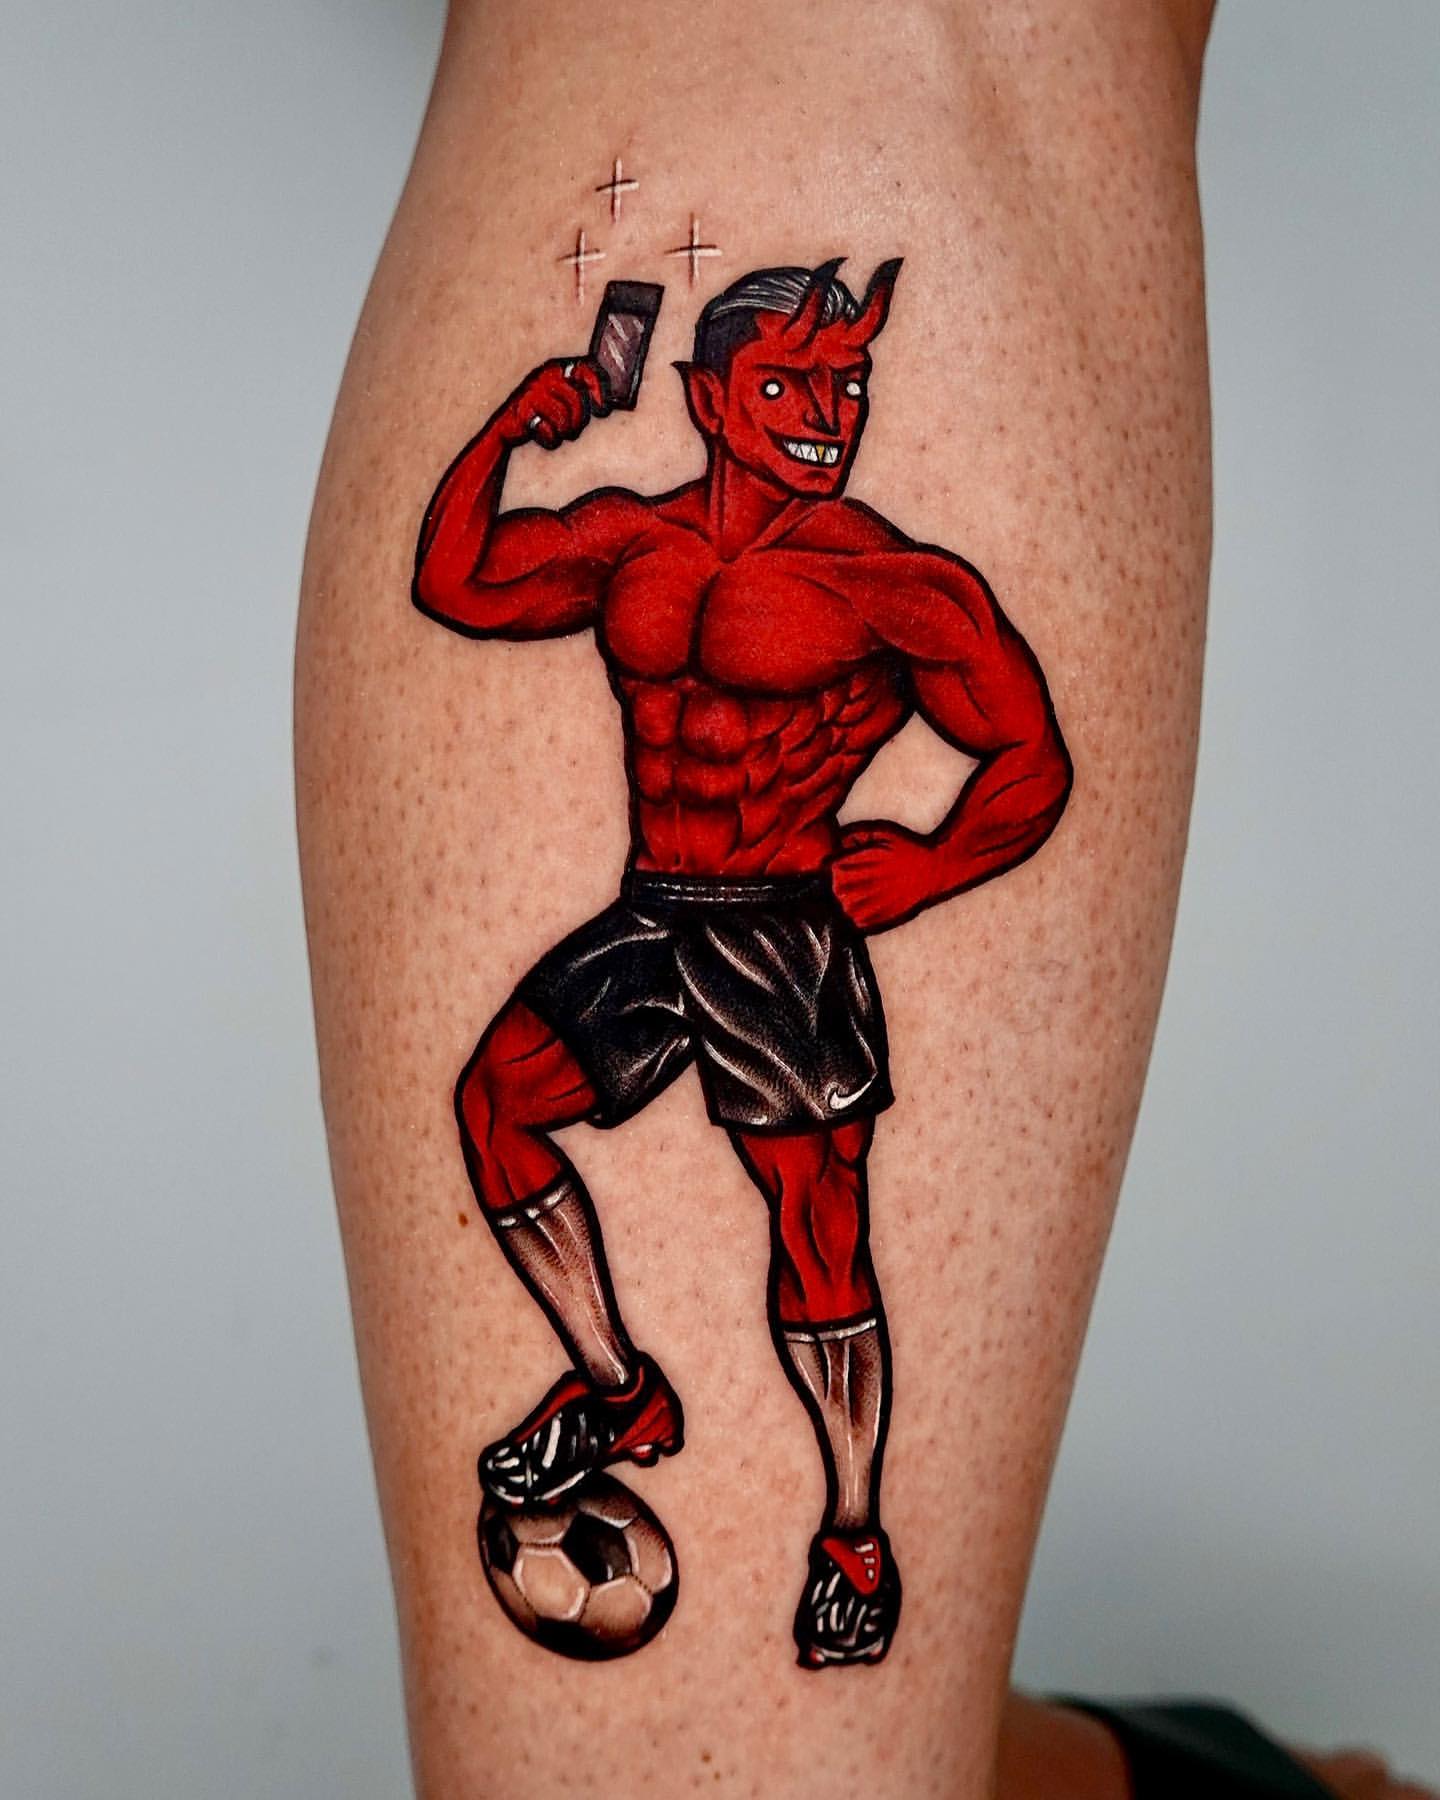 Back leg tattoo ideas... - InksTambay Tattoo in DXB | Facebook